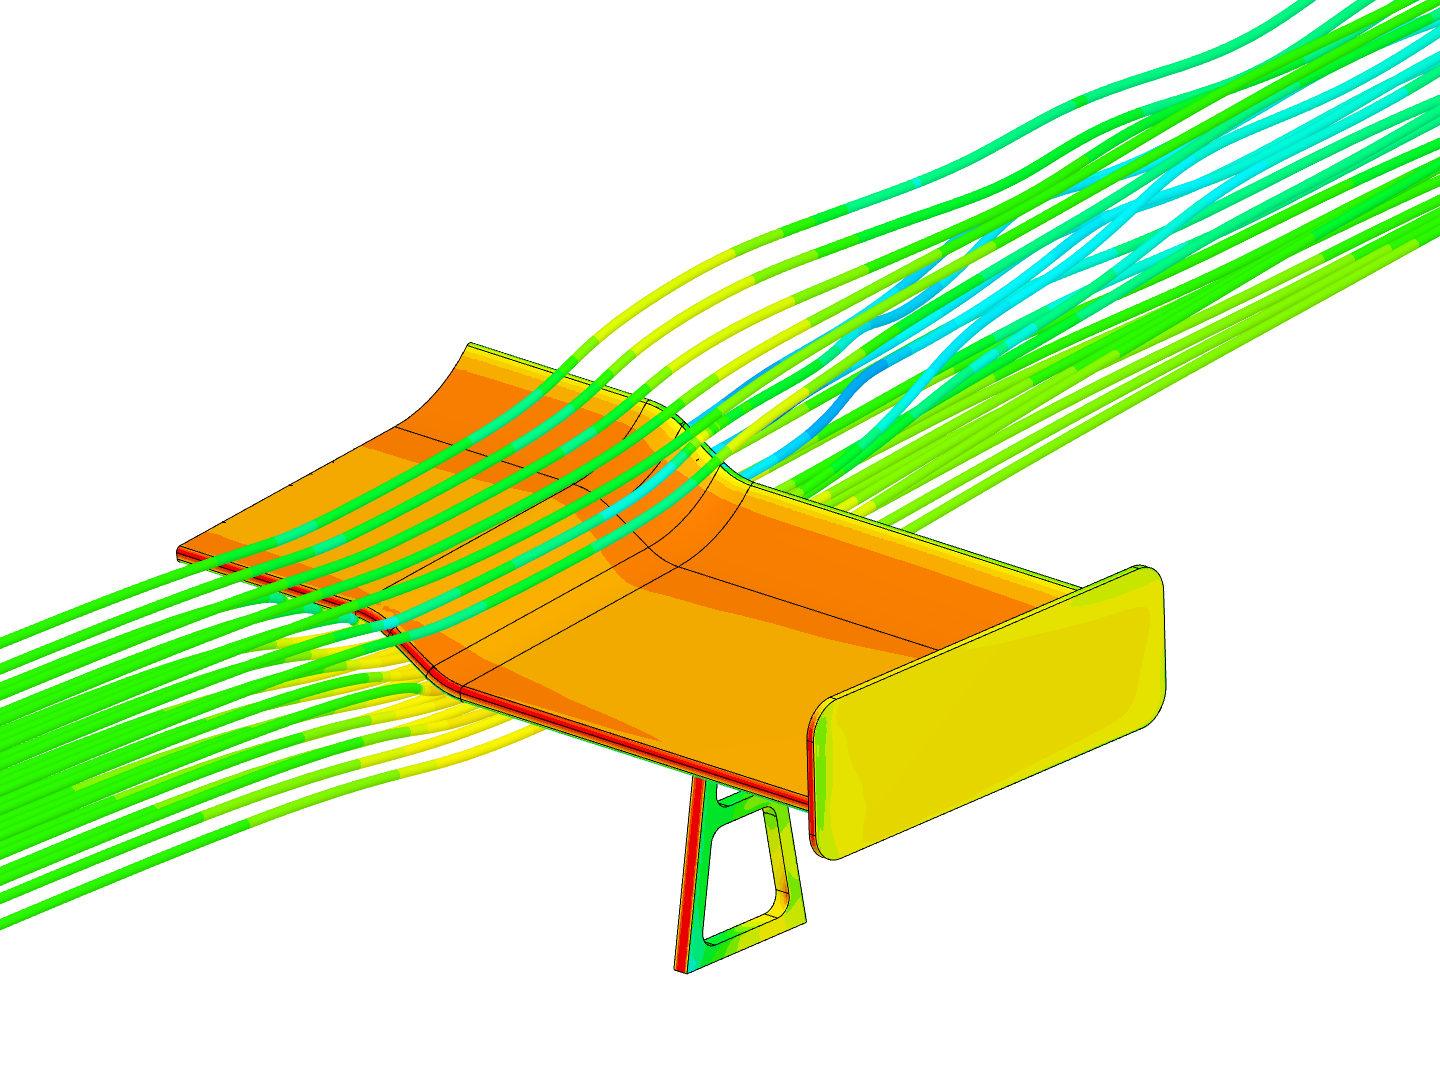 coursera air flow around a GT car spoiler image